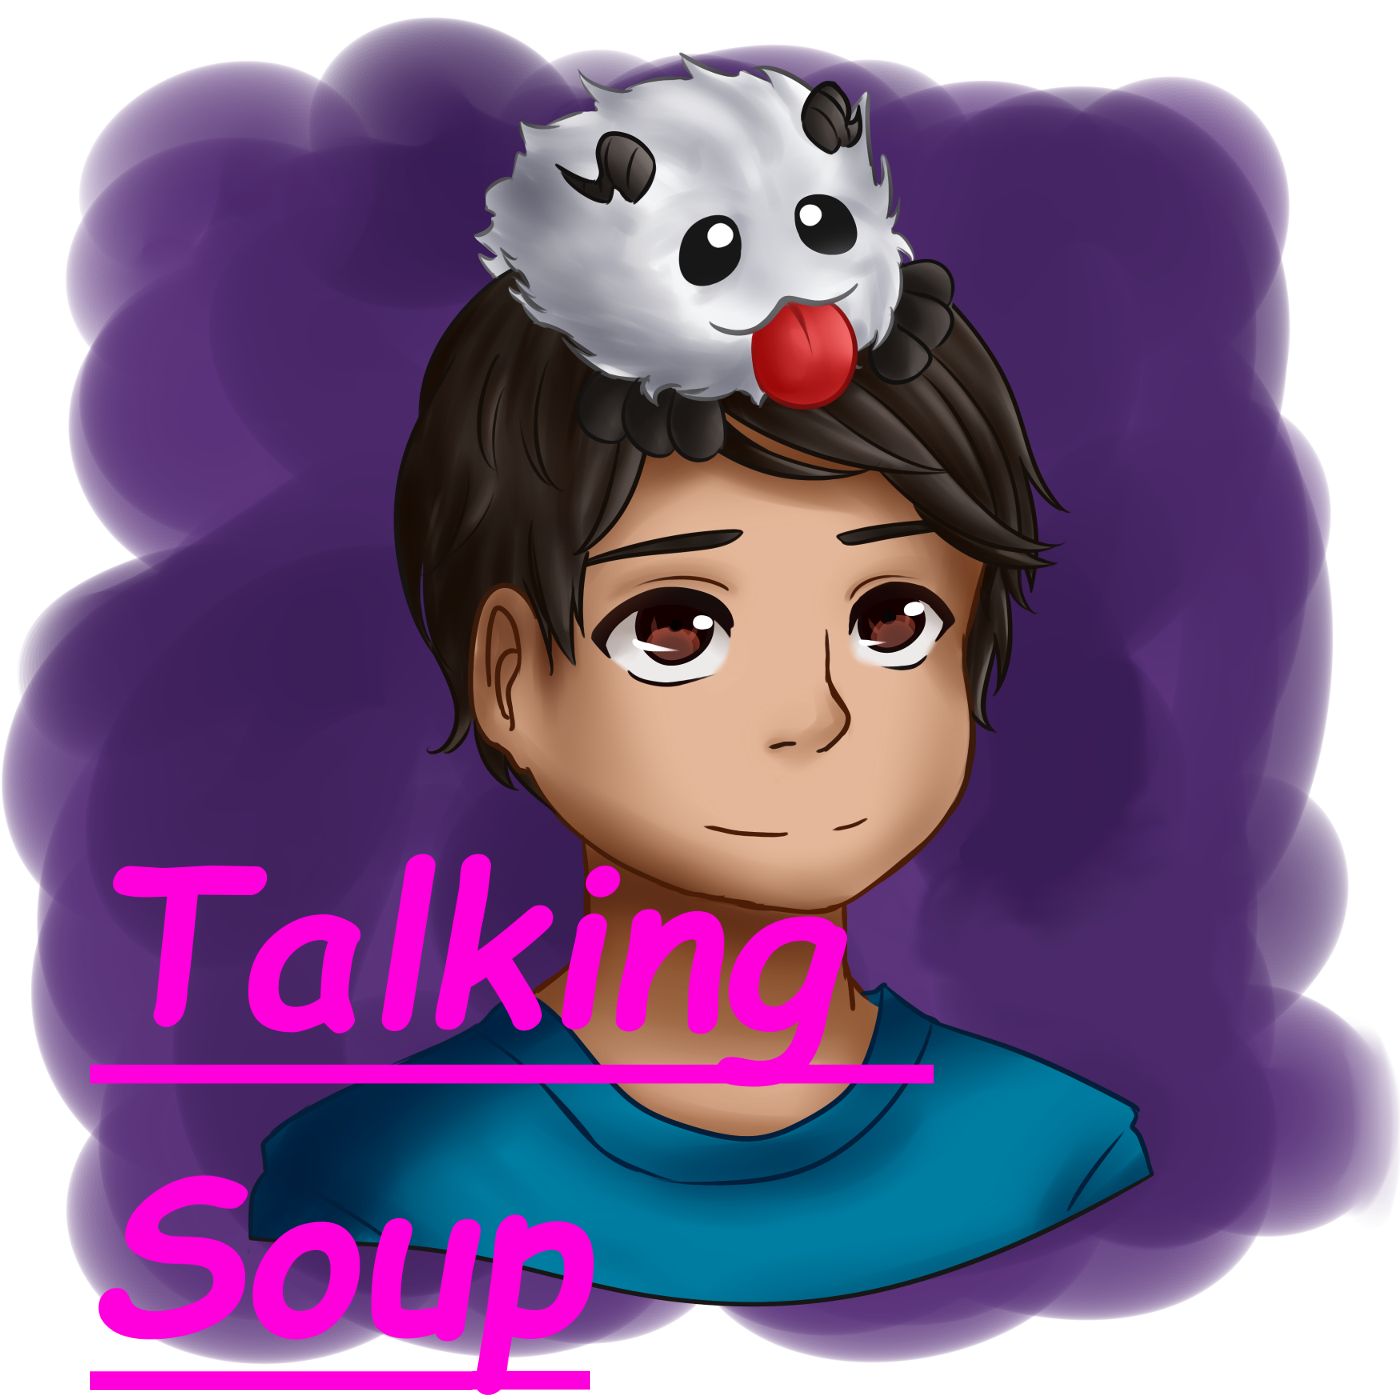 Talking Soup